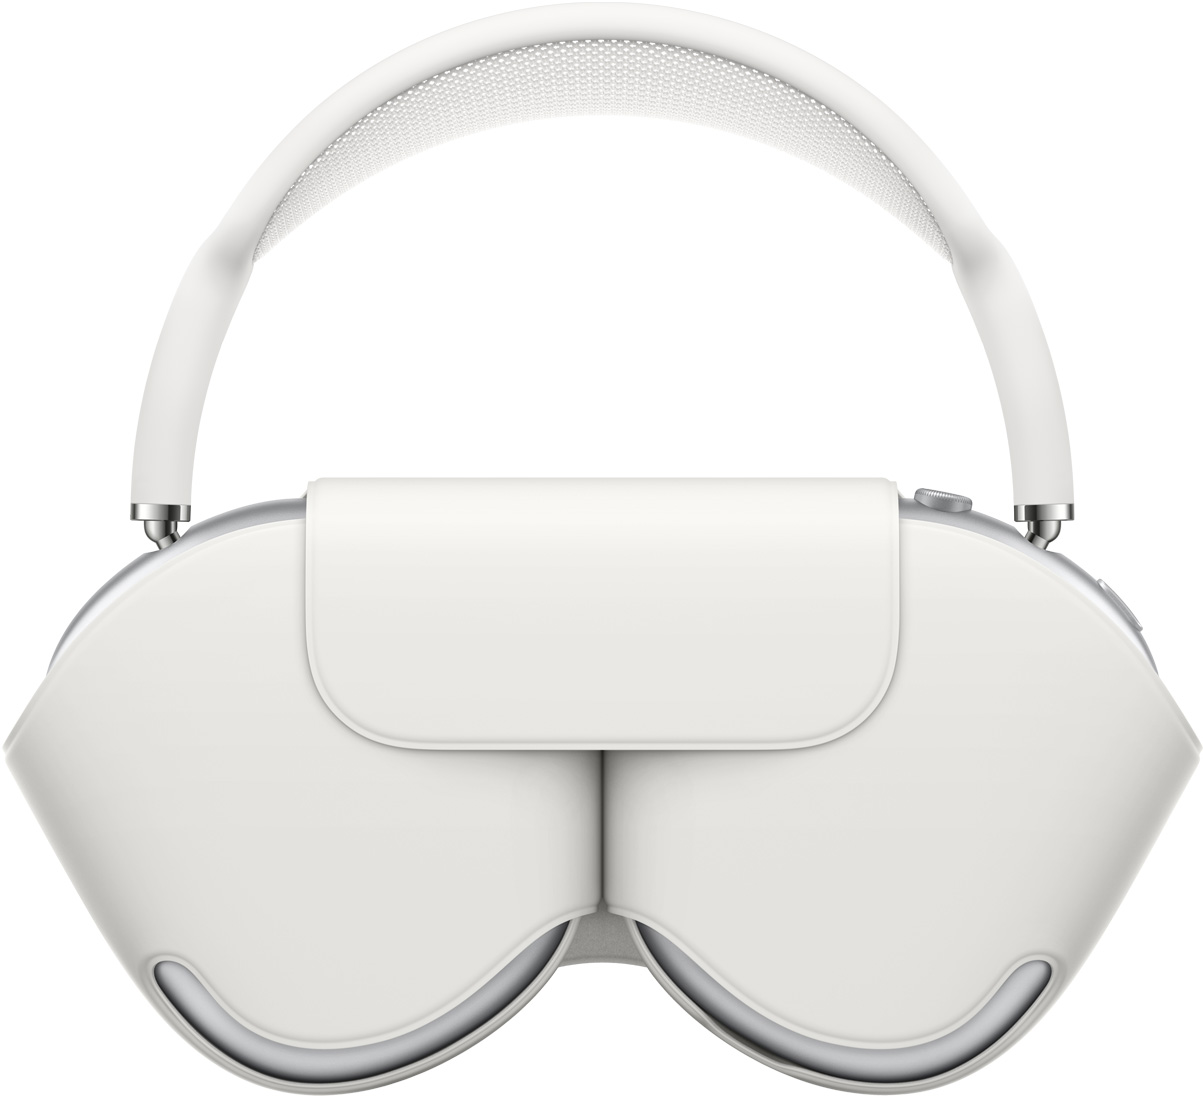 图片展示收纳在智能耳机套中的 AirPods Max。